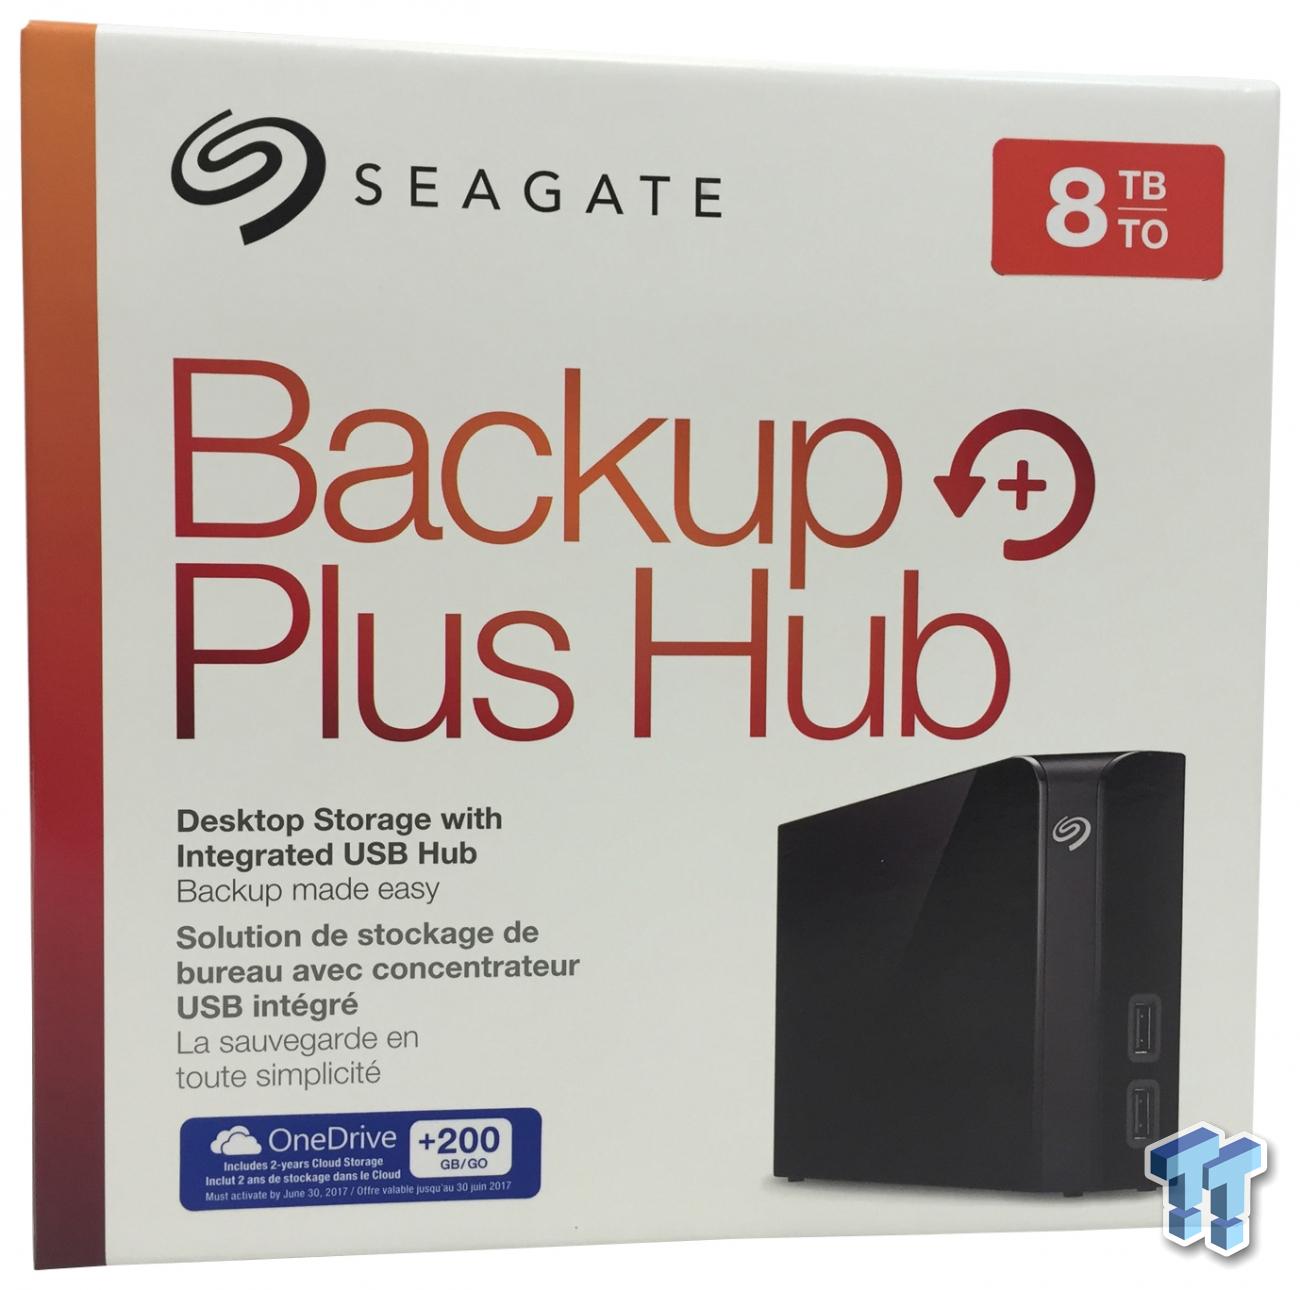 Seagate Backup Plus Hub 8TB External Drive Review